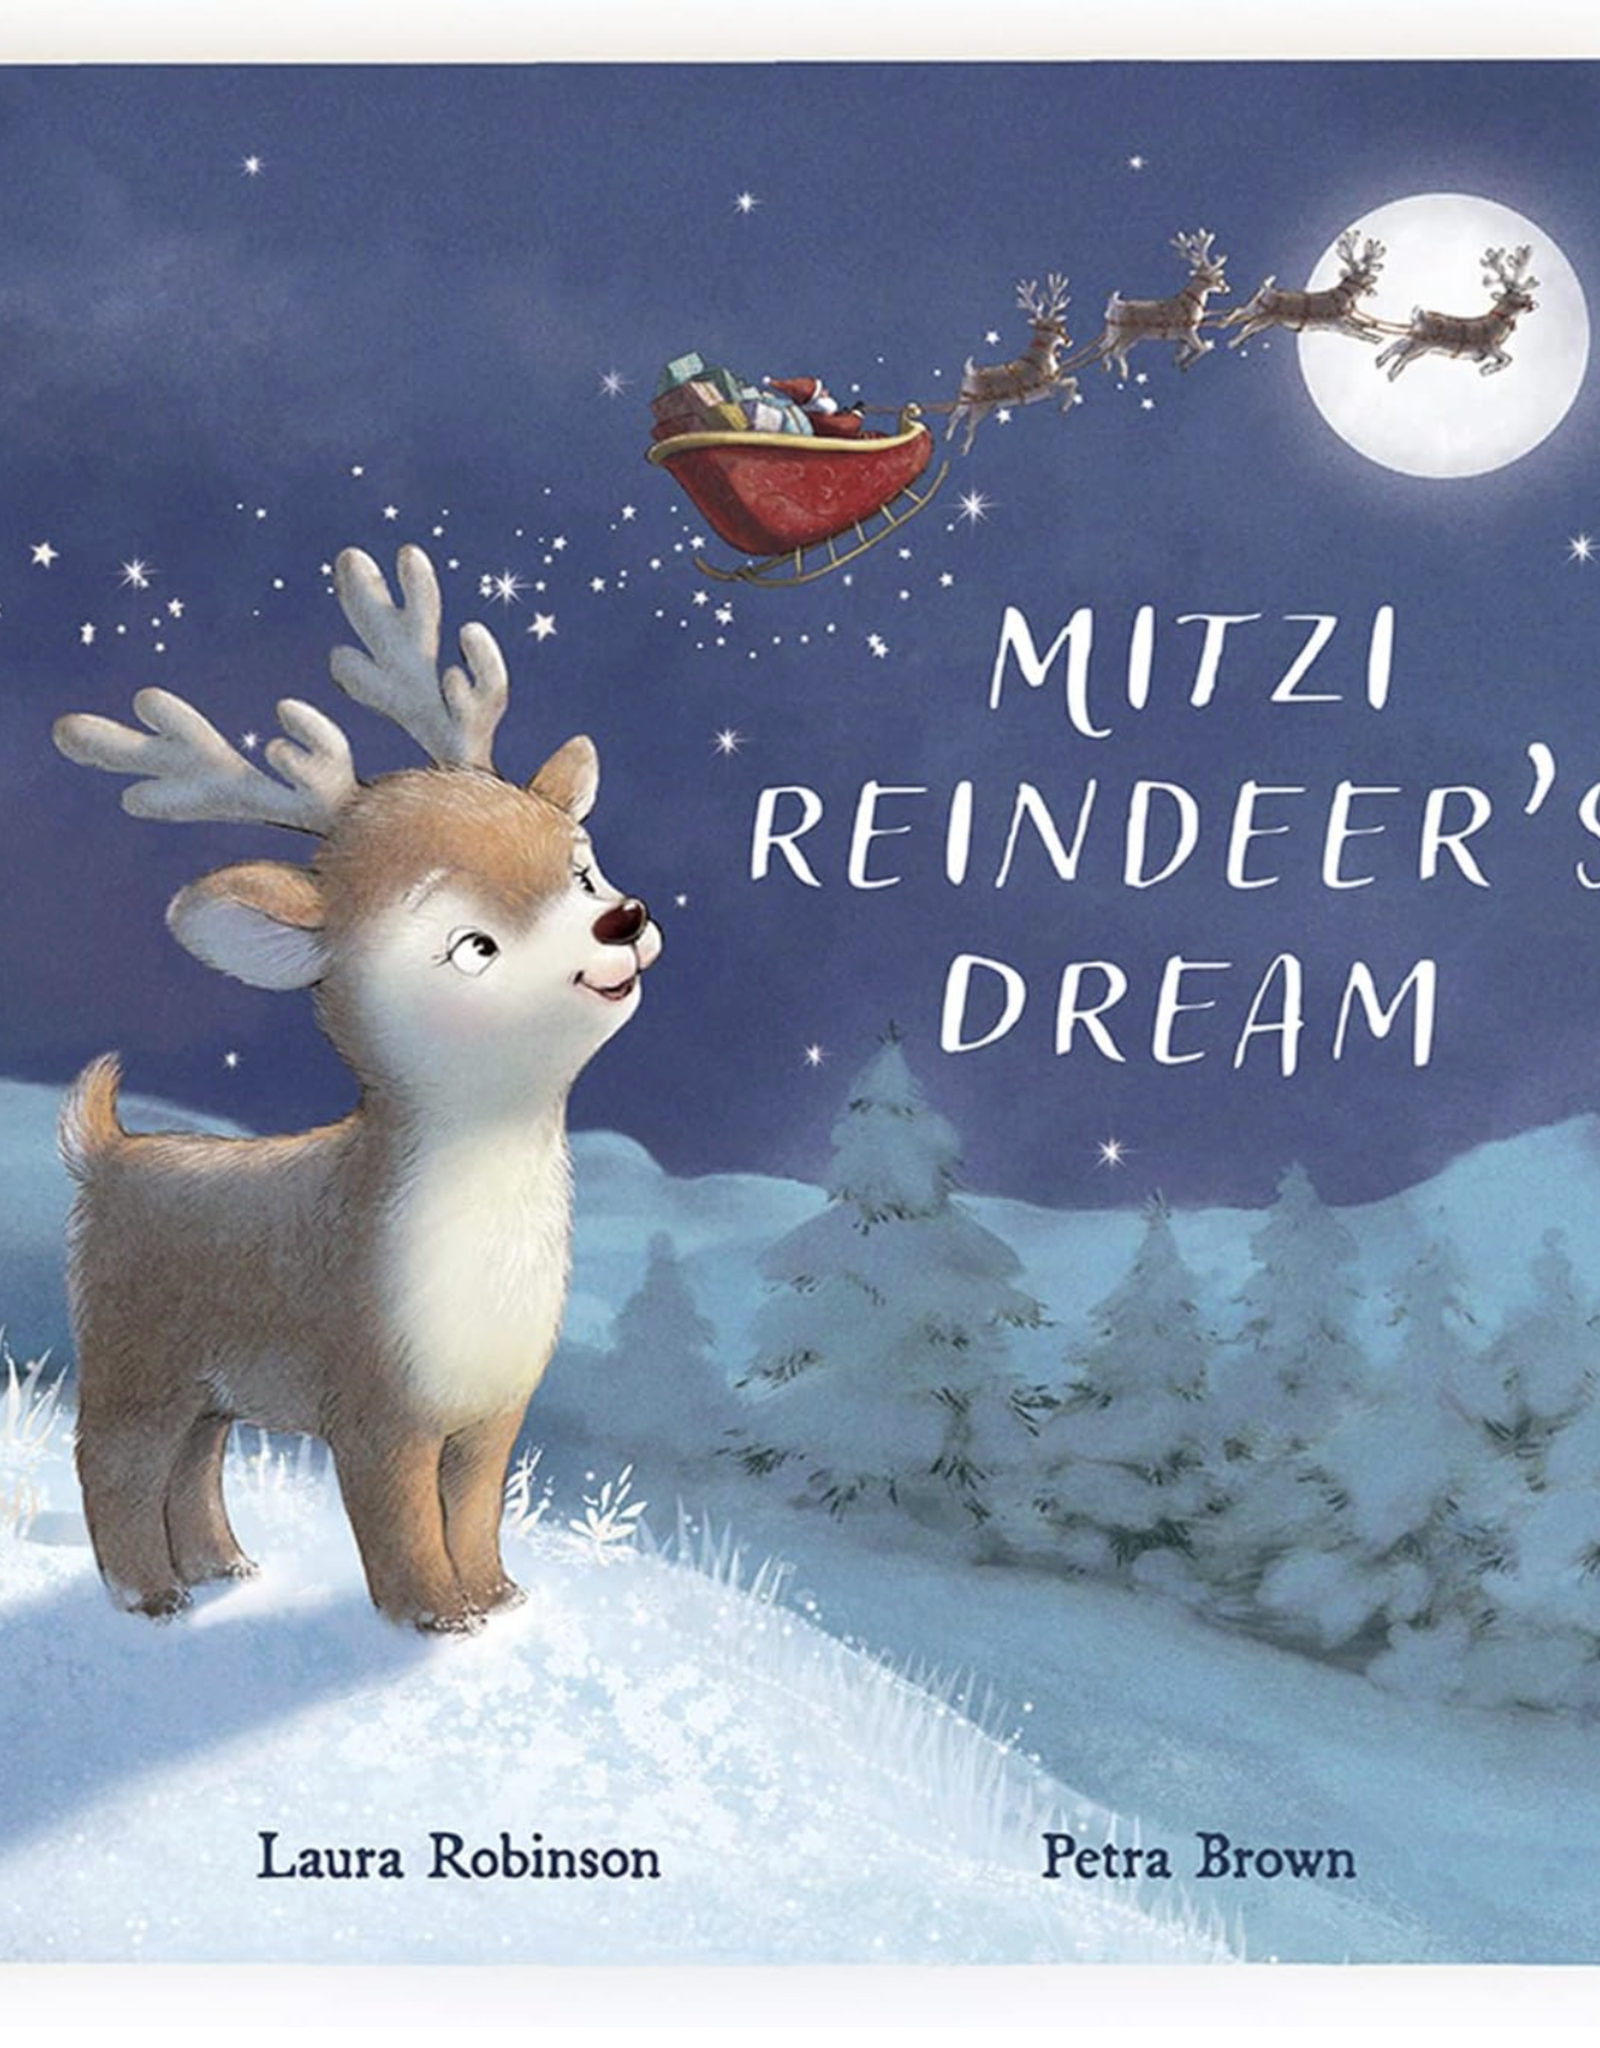 Jellycat a reindeer's dream book